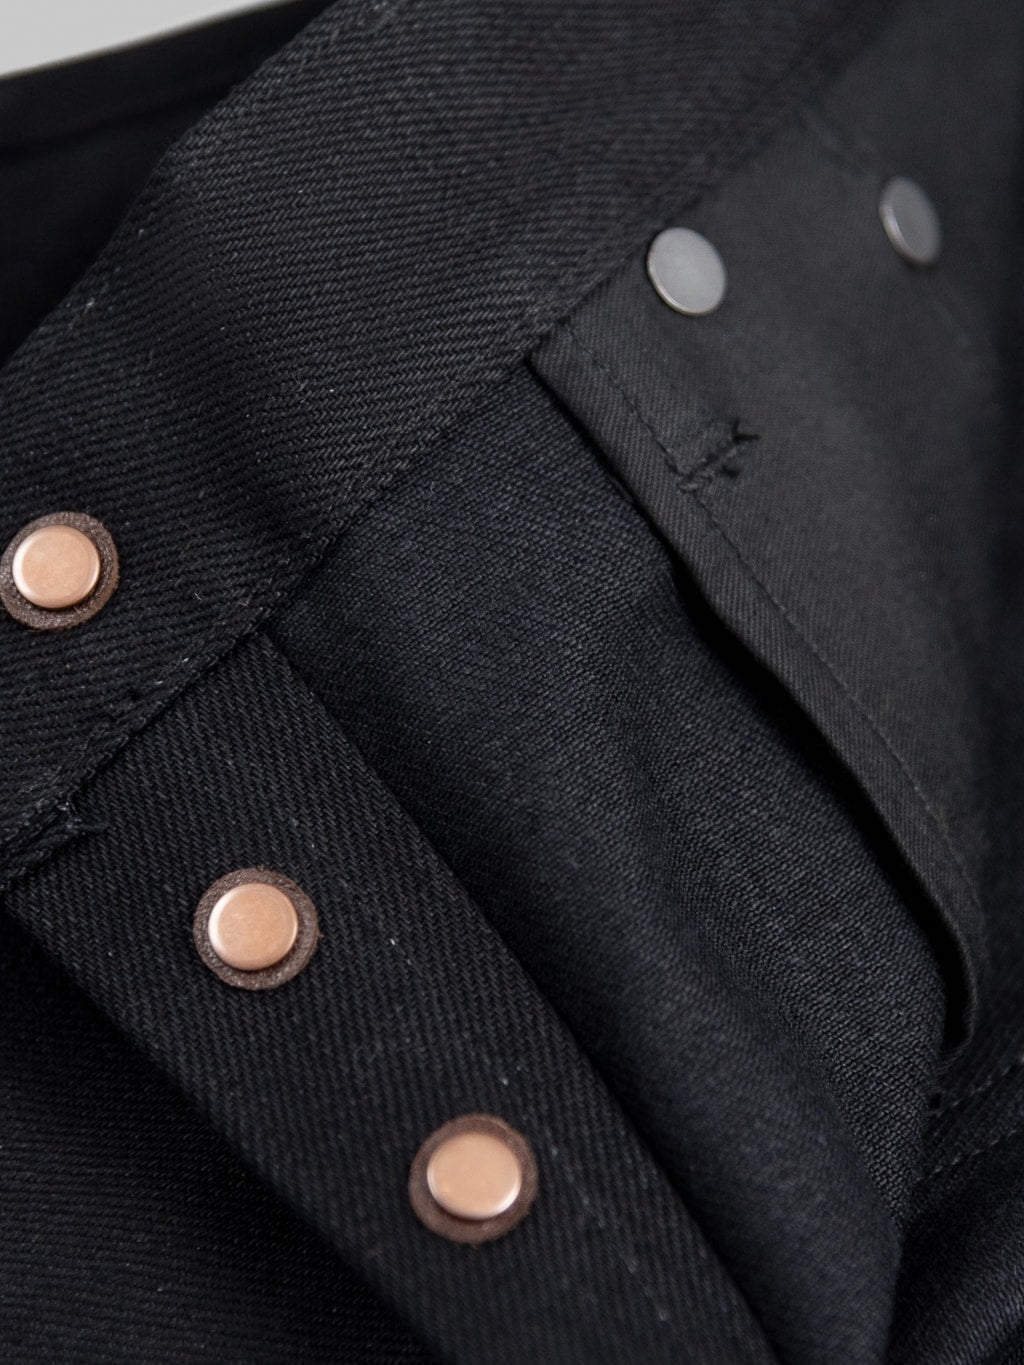 Stevenson Overall Big Sur 210 Slim Tapered jeans solid black lining pocket